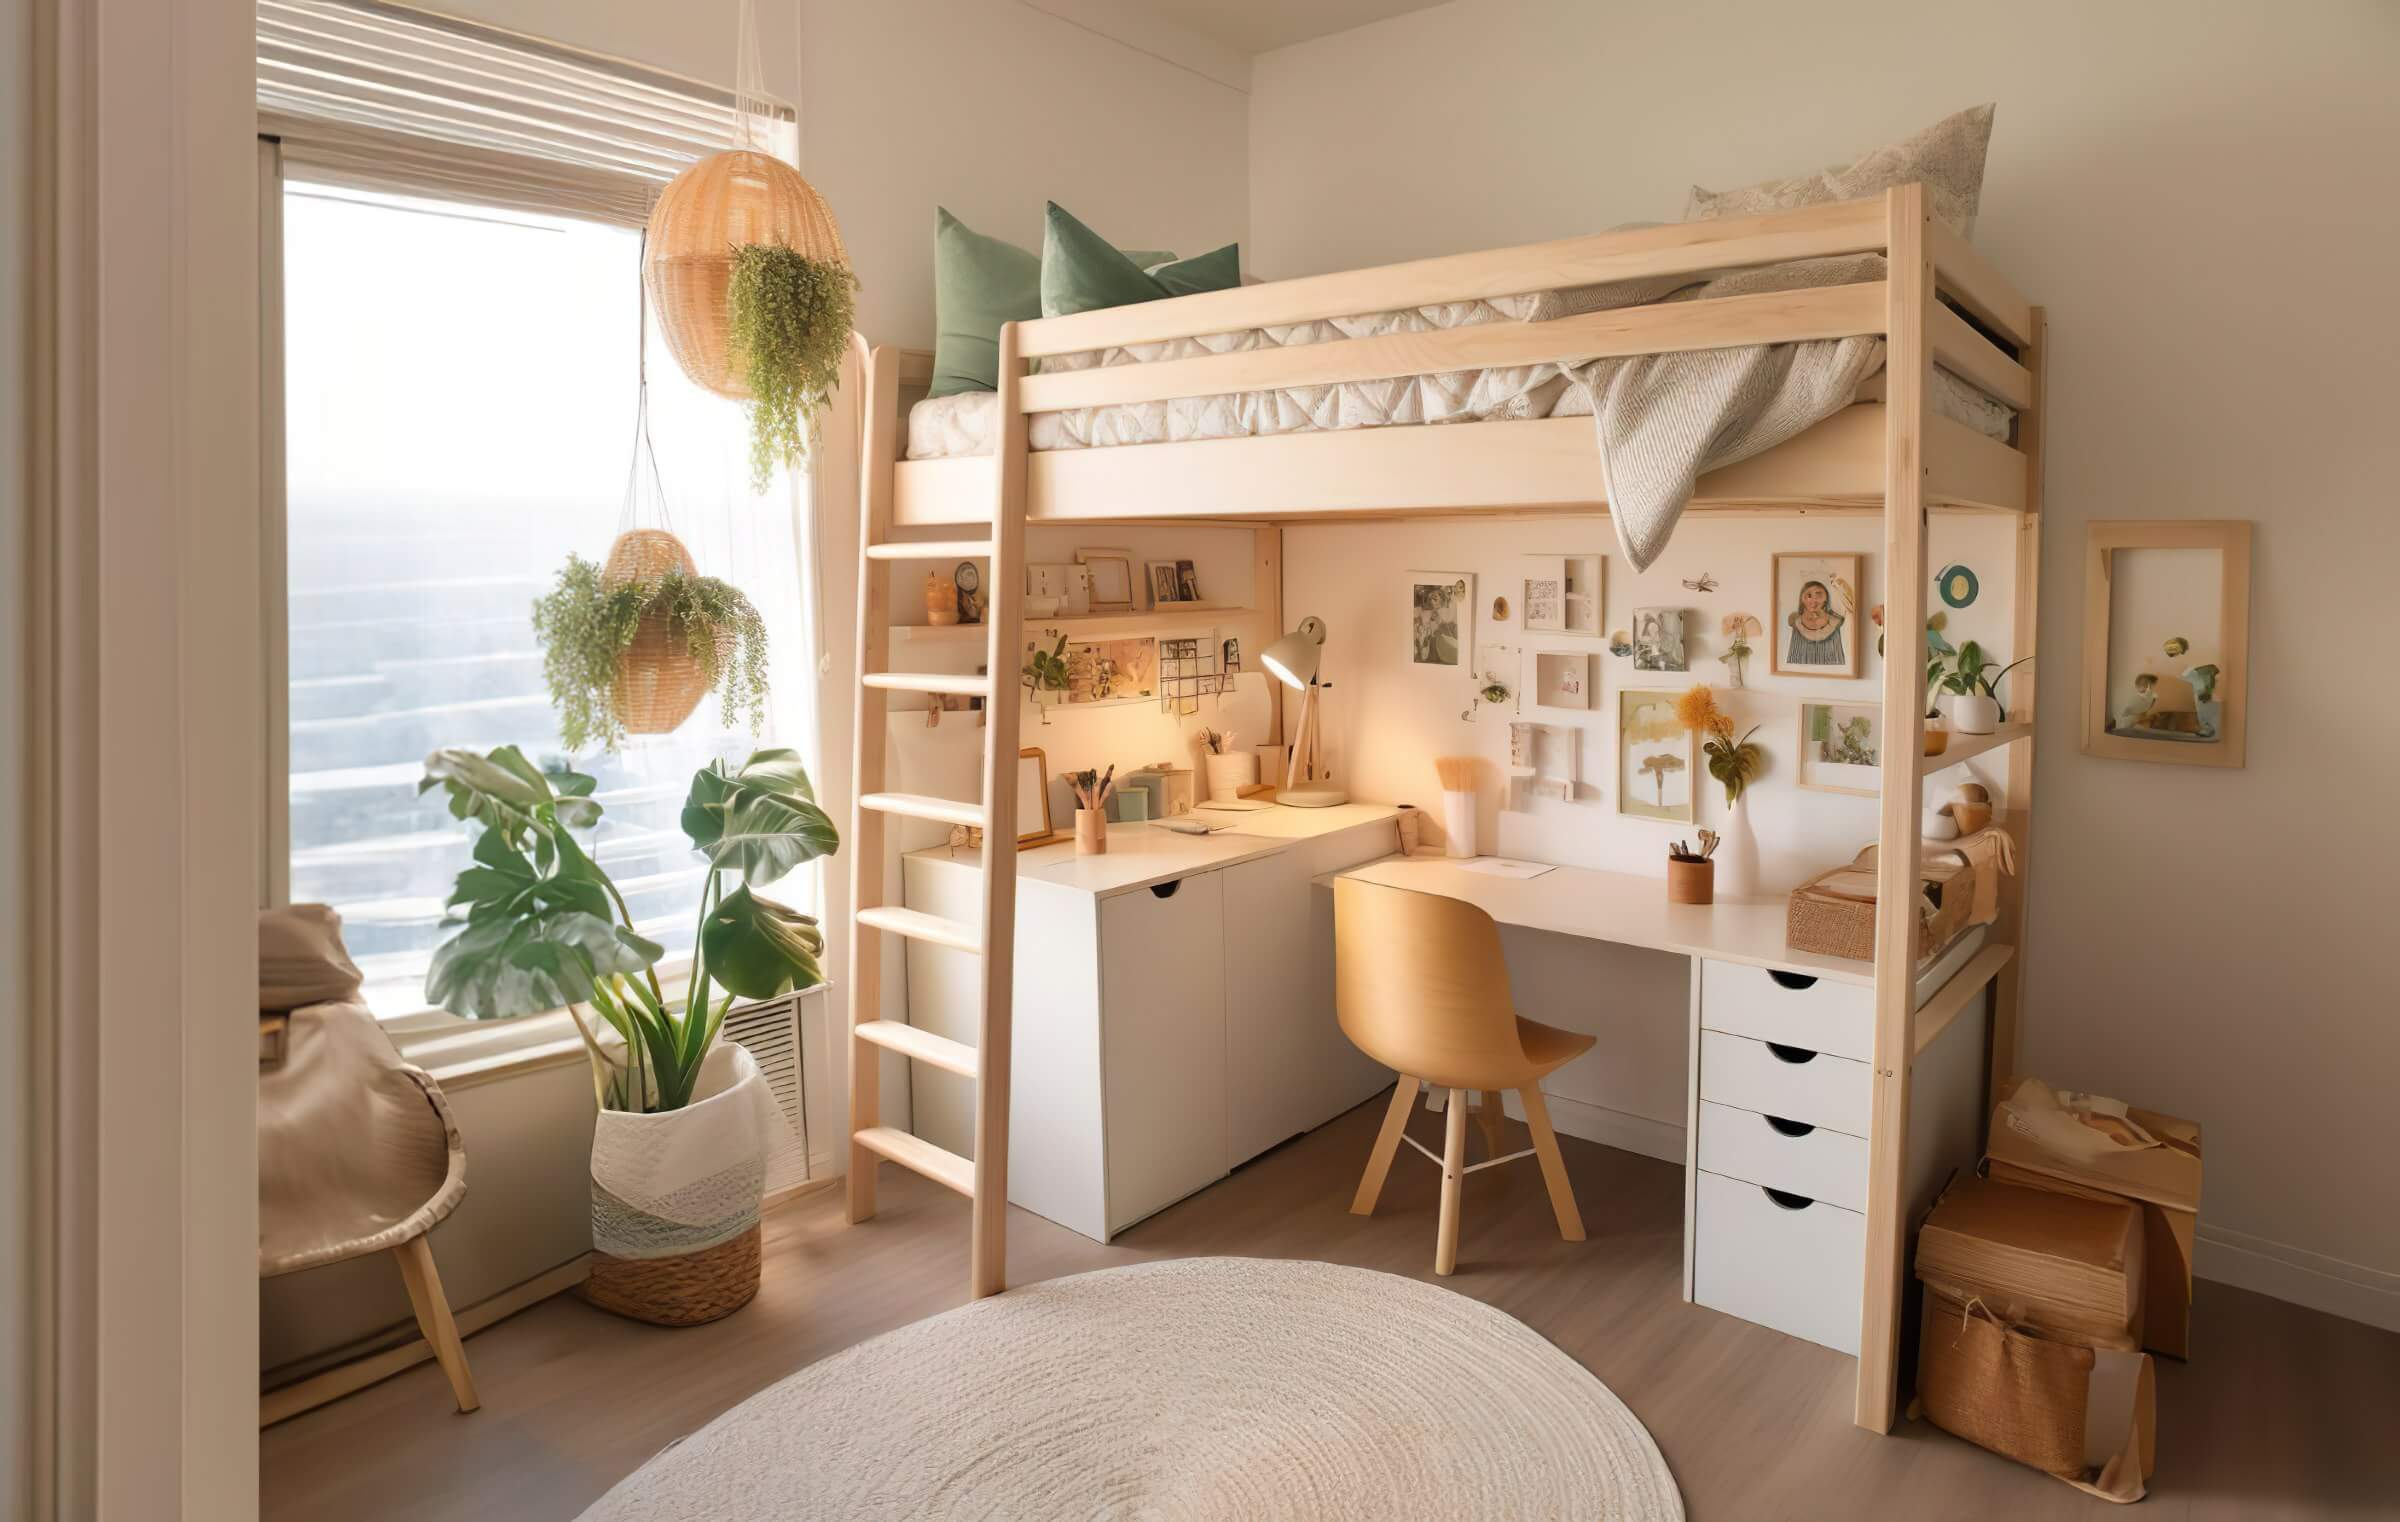 Ein helles Jugendzimmer im Boho-Style mit großen Pflanzen sowie Bildern an den Wänden. Im Zimmer befindet sich ein Hochbett aus hellem Naturholz. Unter dem Hochbett befindet sich ein weißer Schreibtisch mit Schubladen an den Seiten.